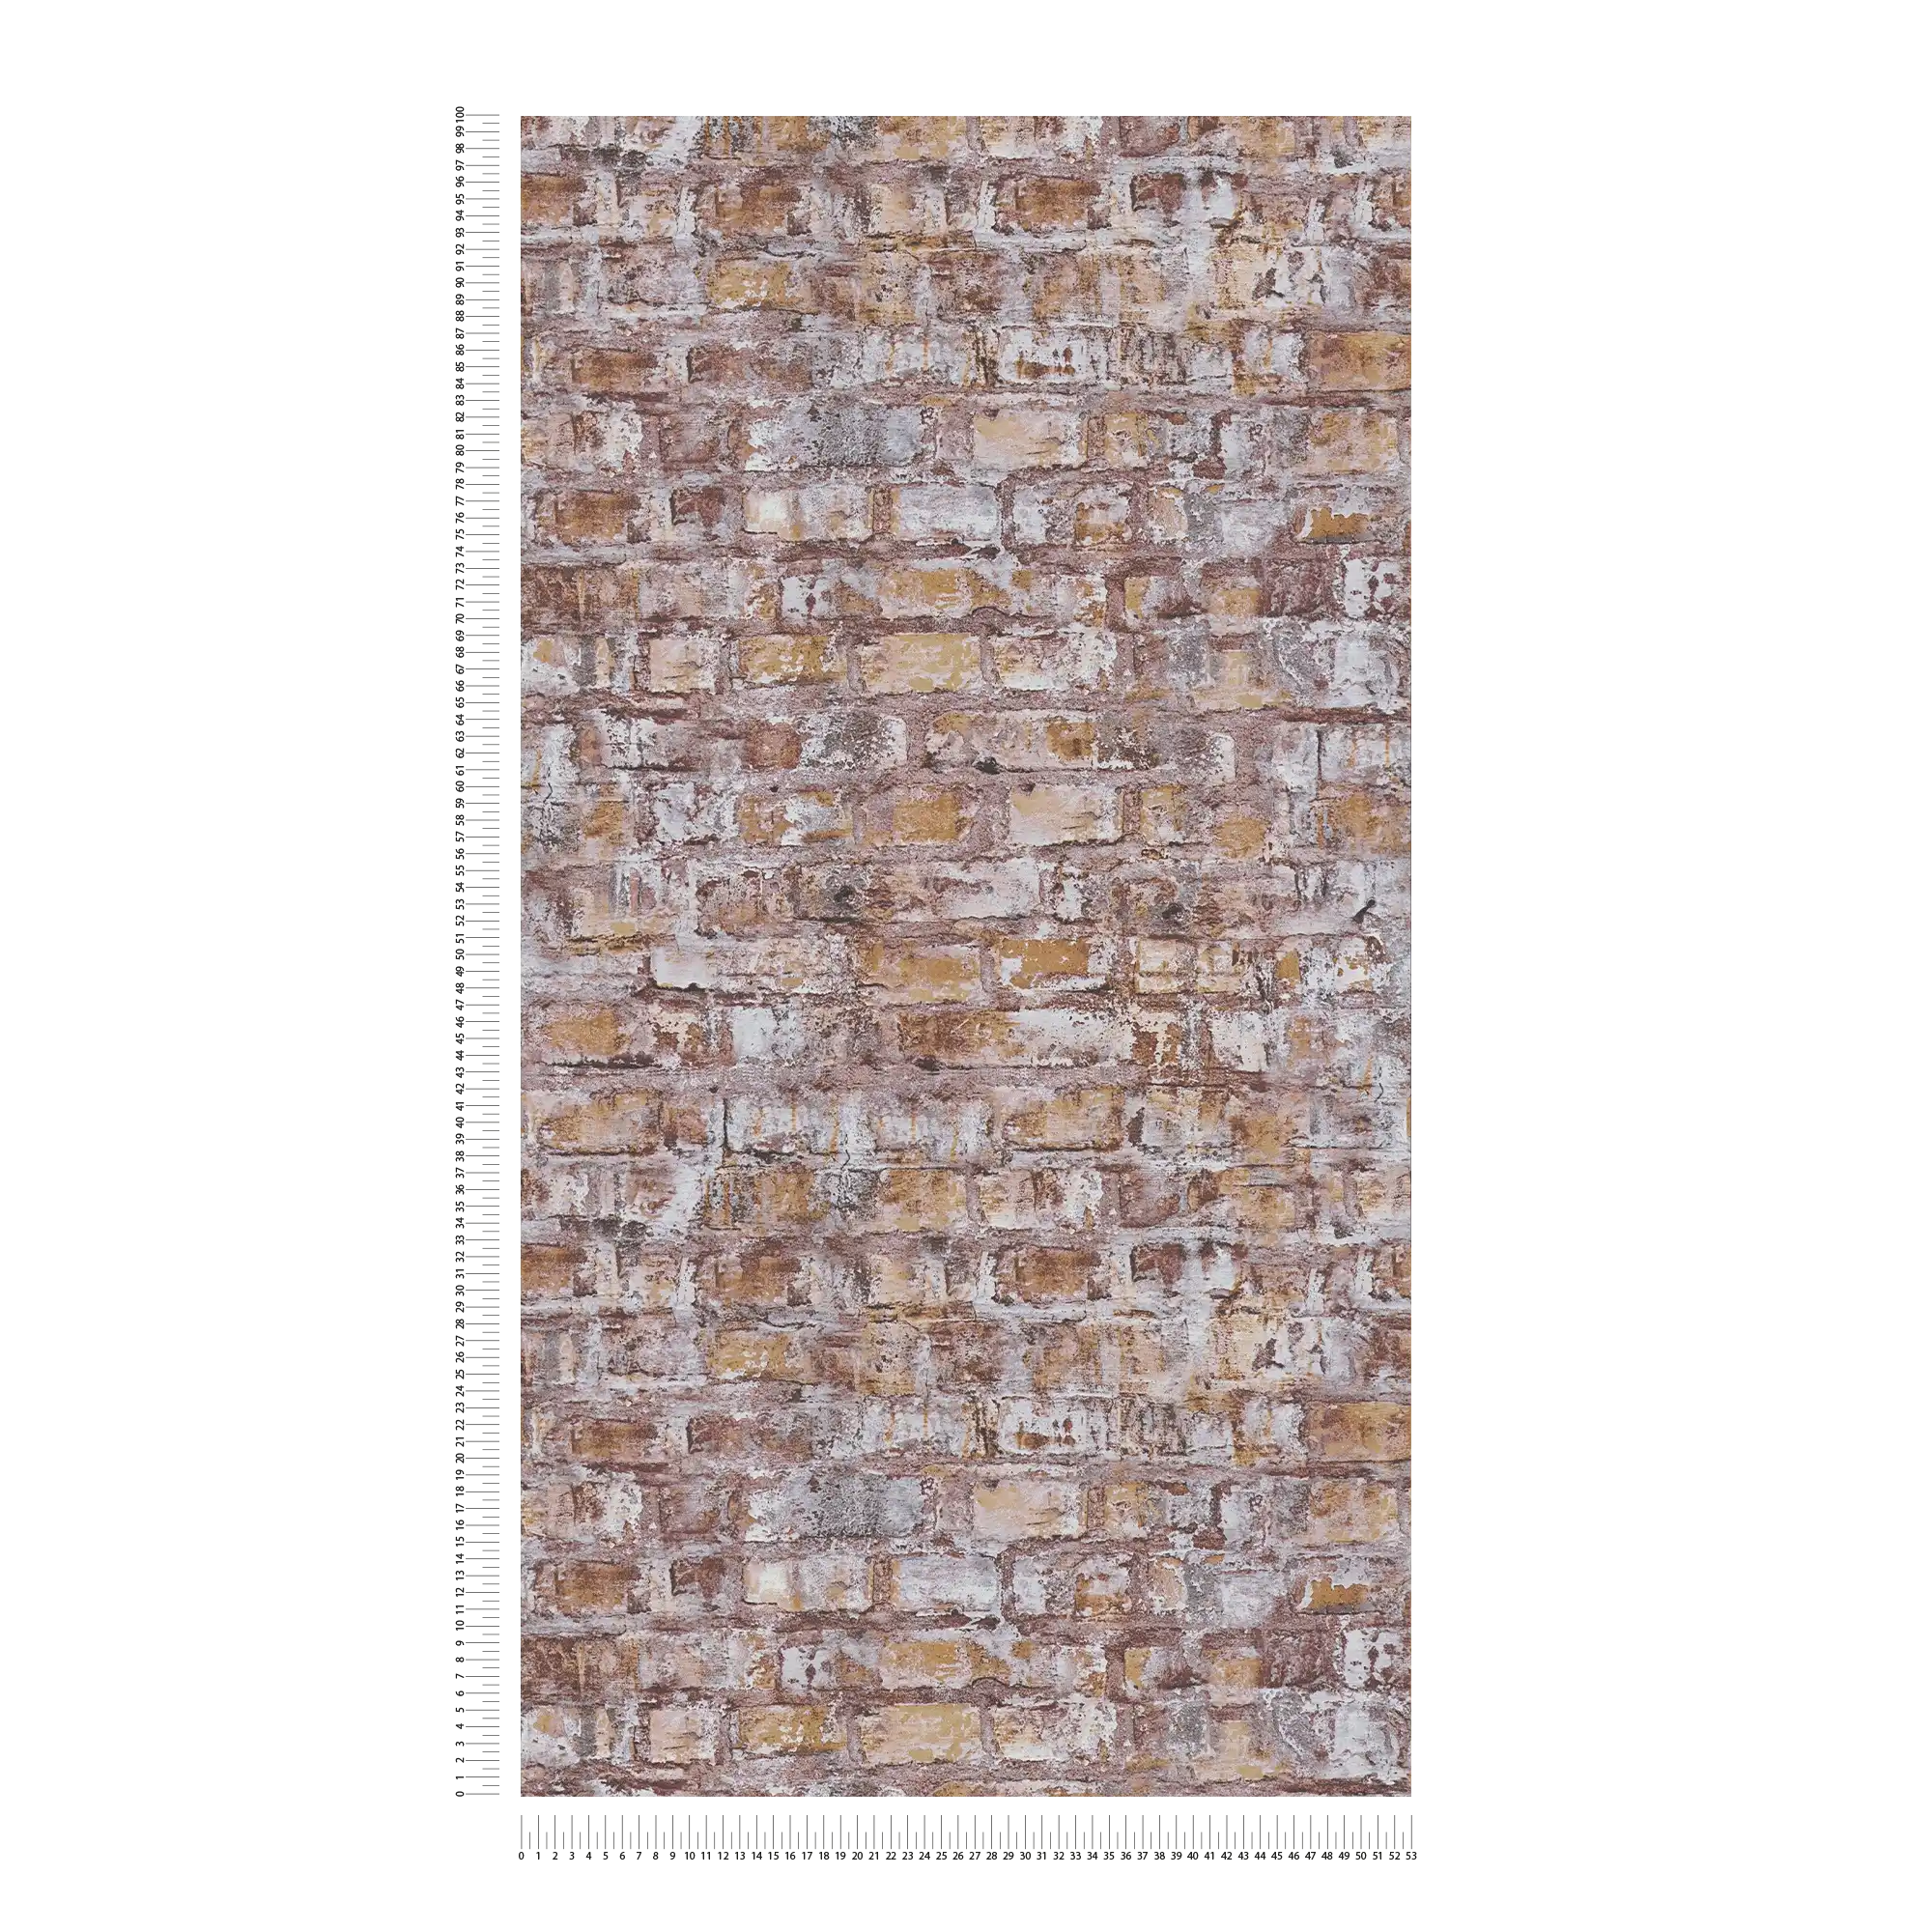             Vliesbehang in baksteenlook met muurmotief - grijs, bruin, wit, roest
        